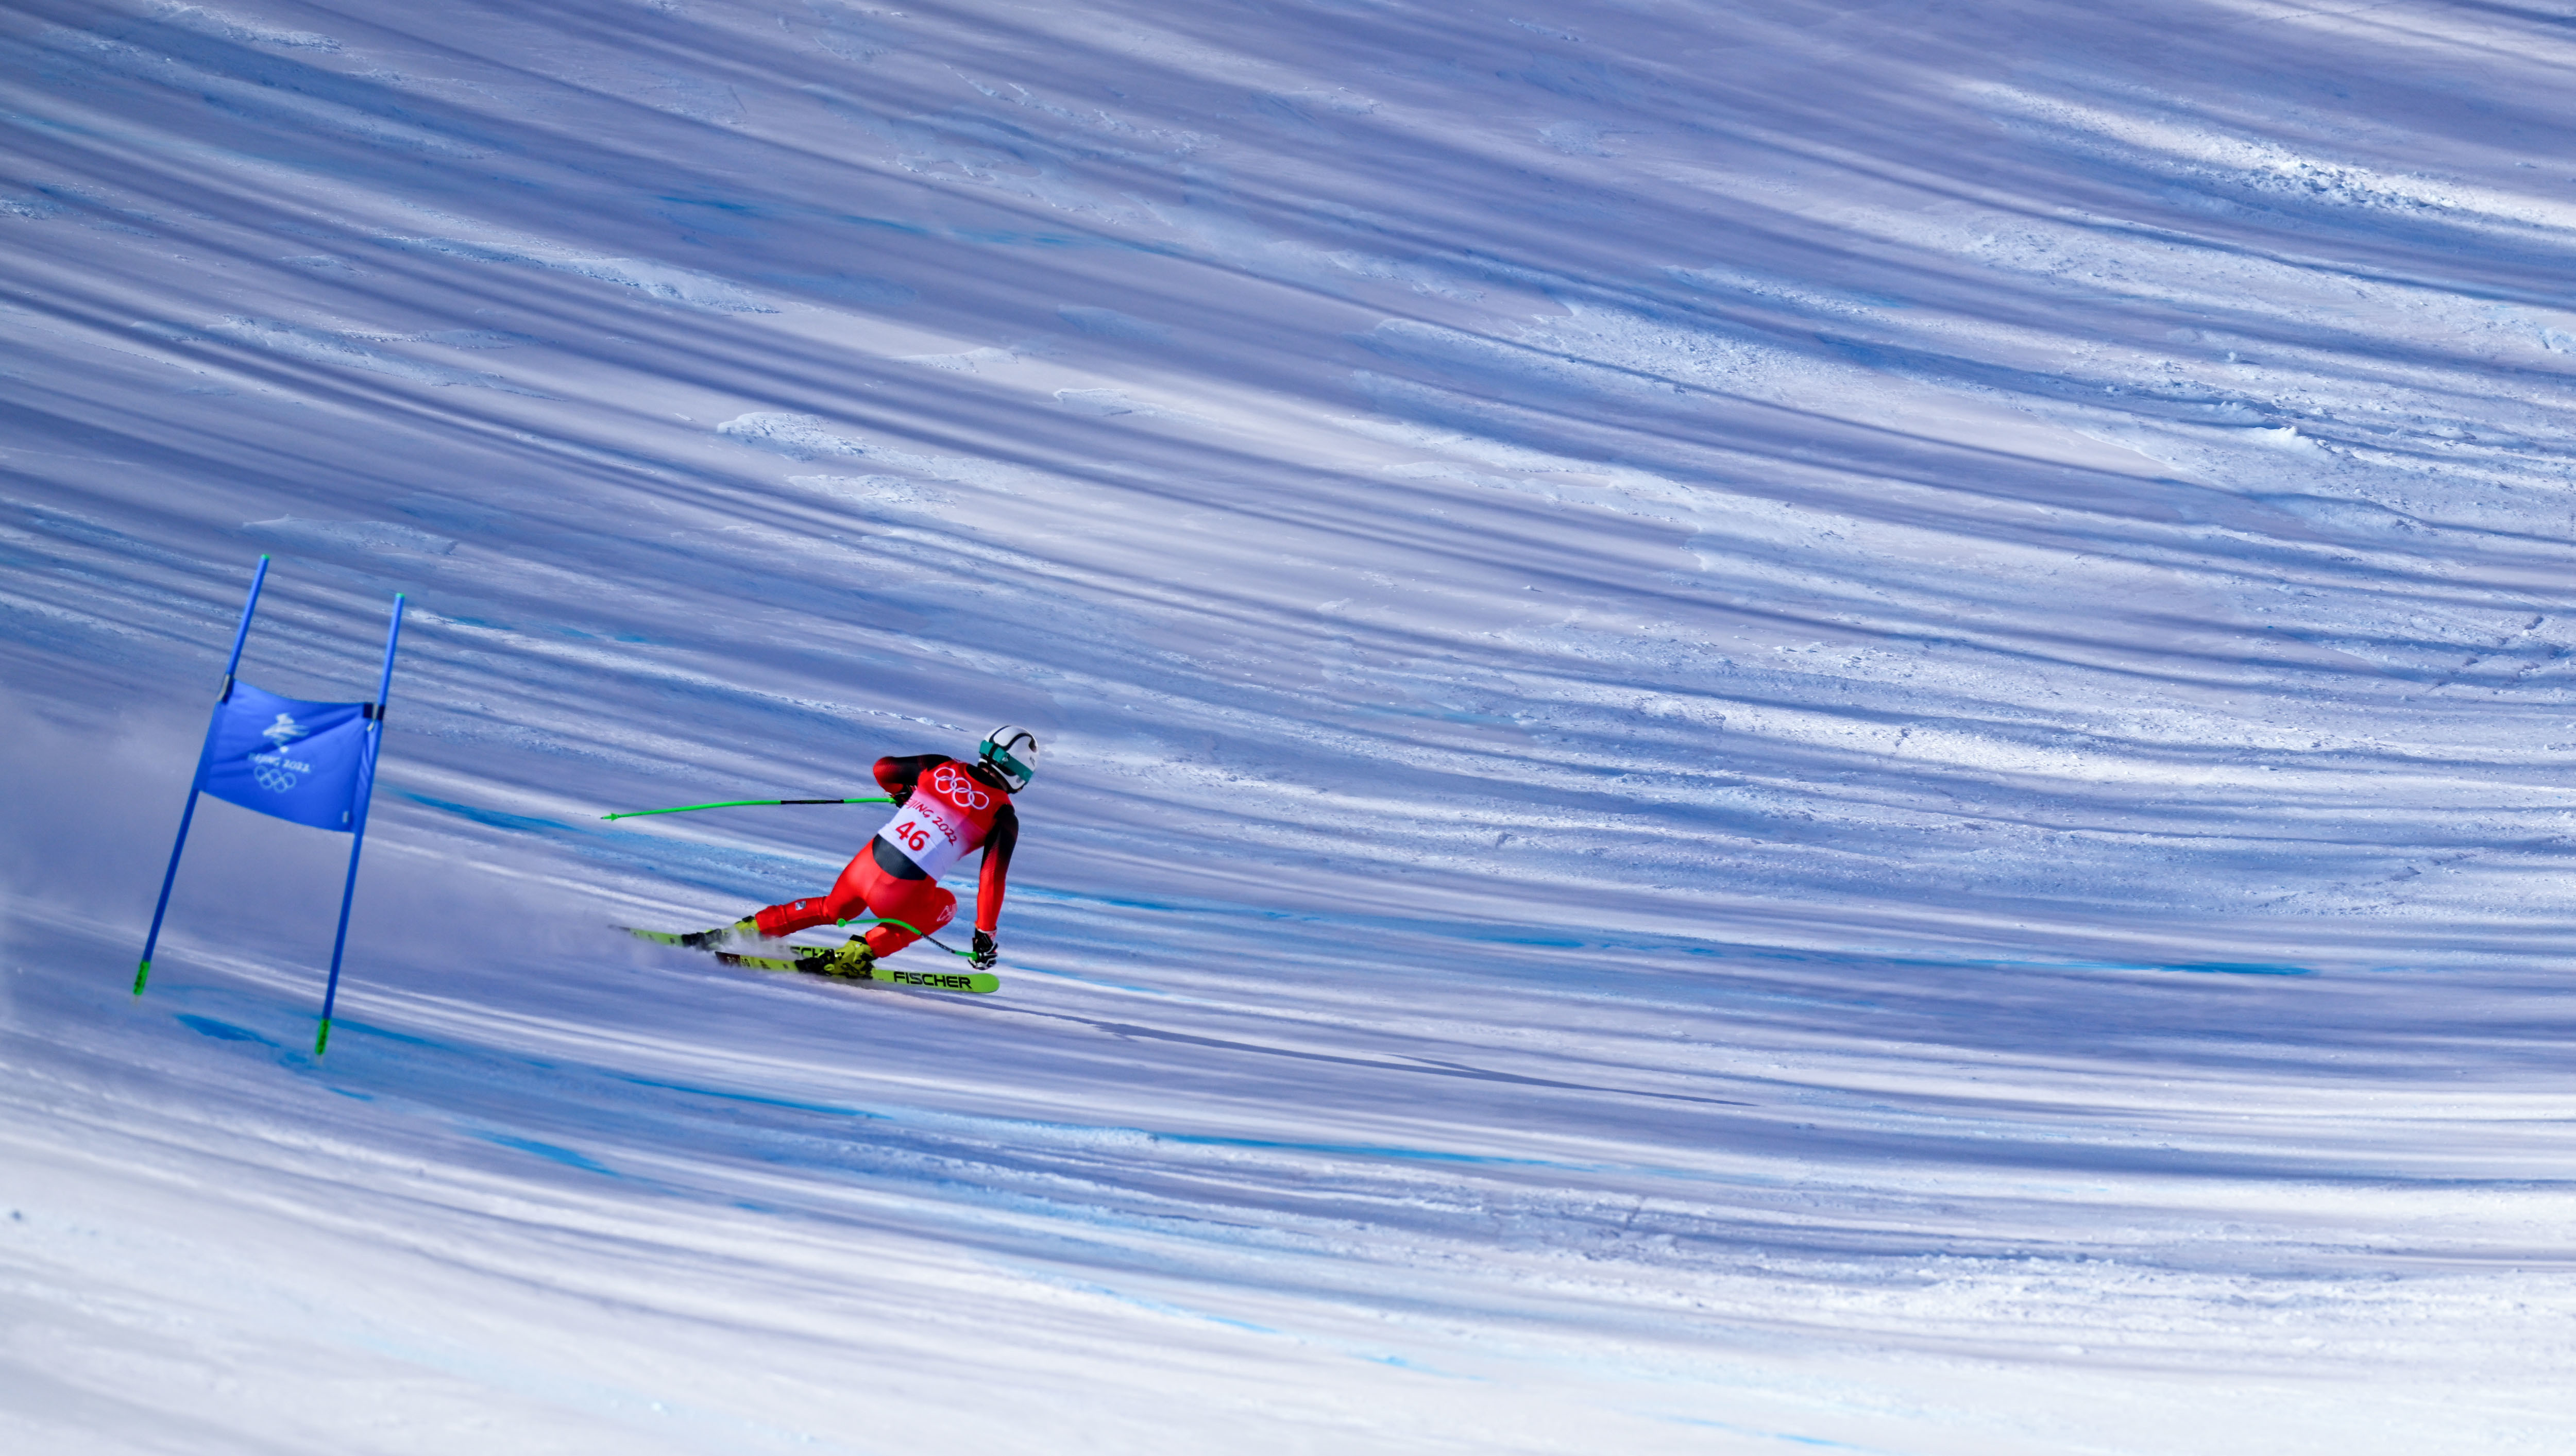 冬奥高山滑雪男子全能滑降两名中国选手顺利完赛